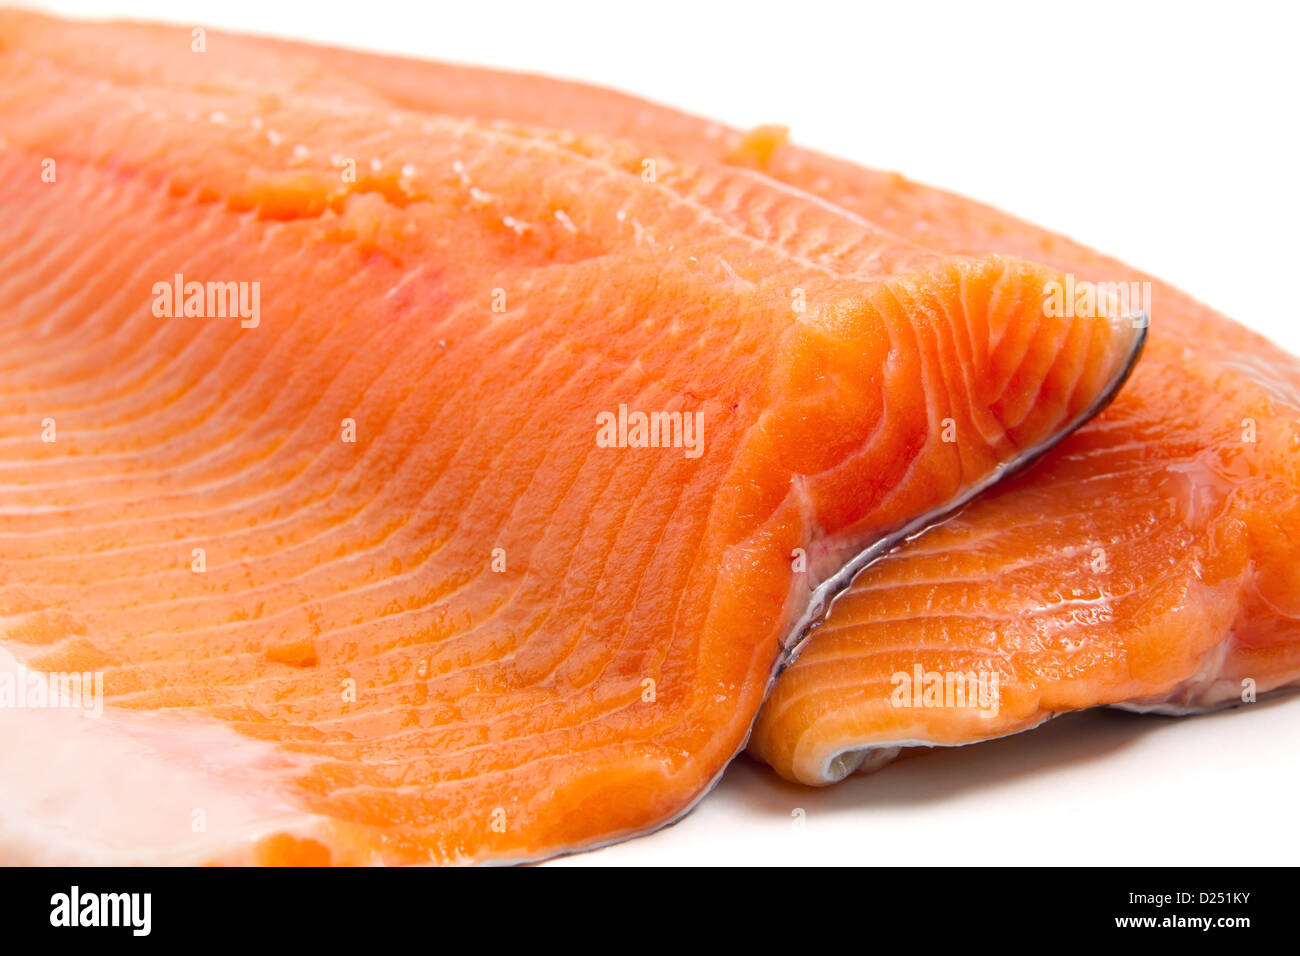 Dettaglio di salmone filetto di trota su sfondo bianco Foto Stock